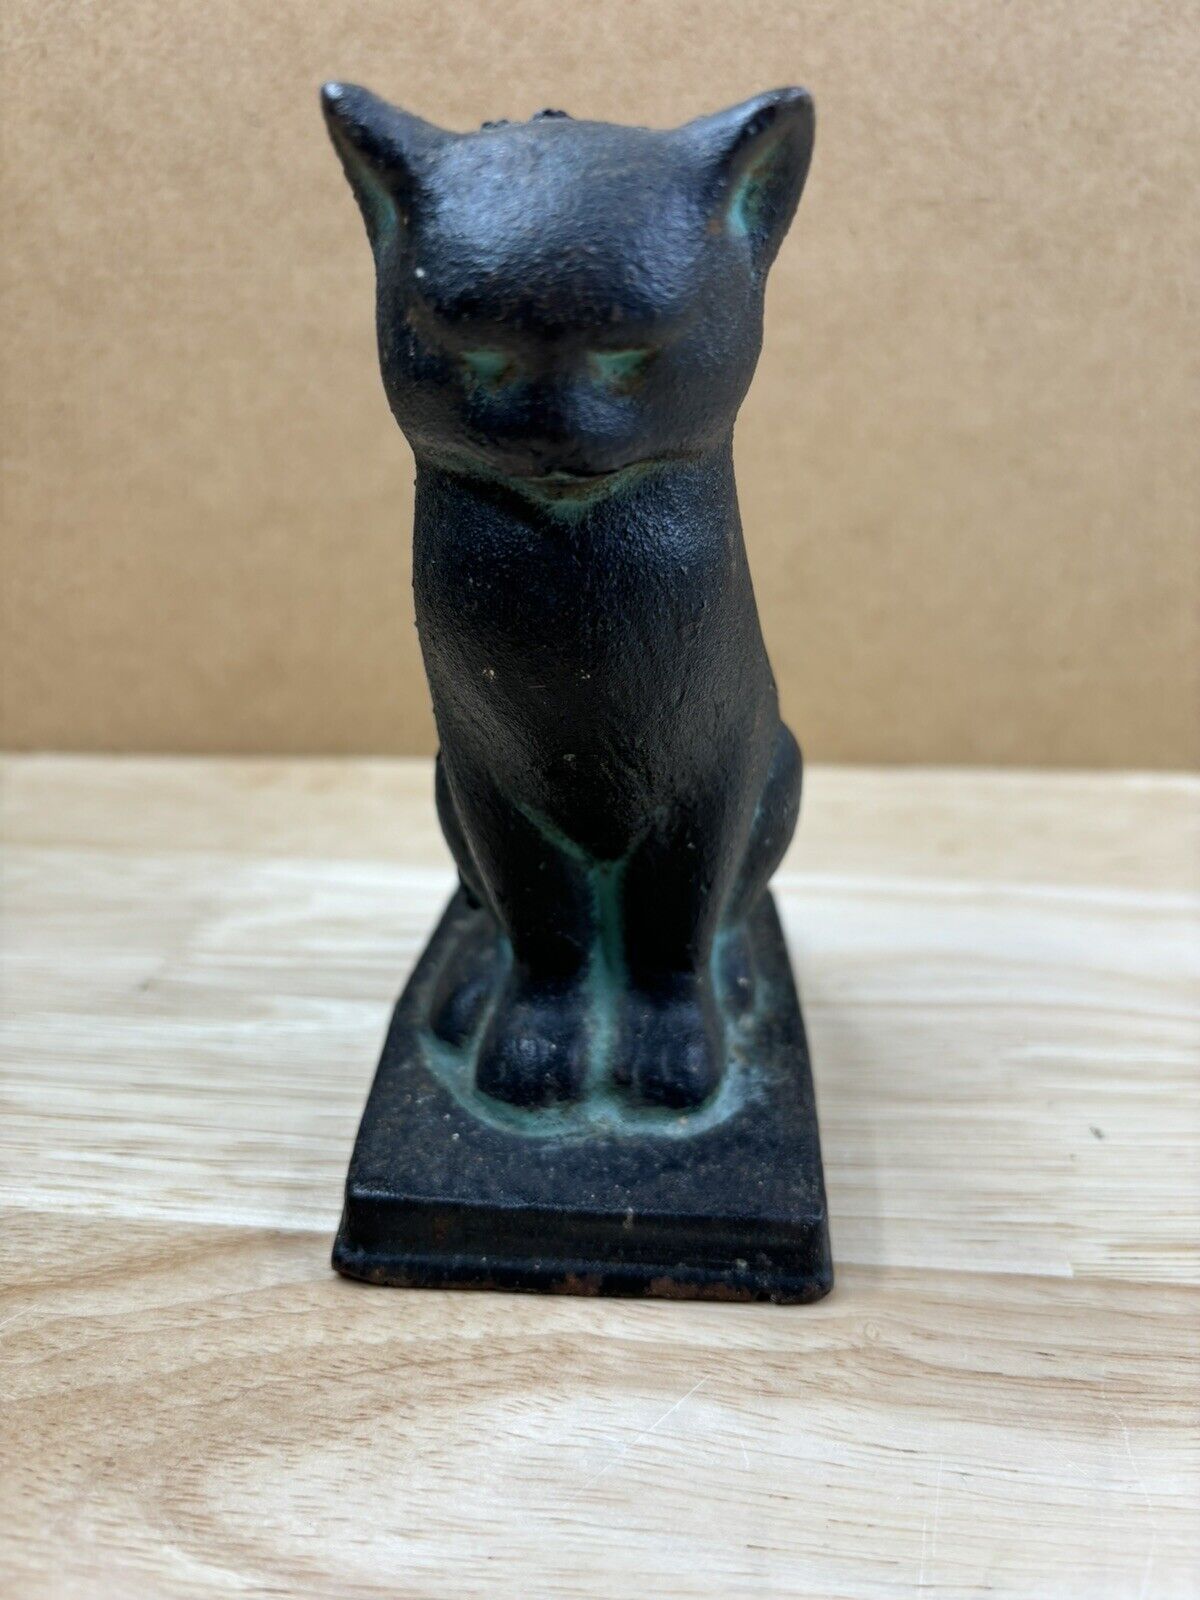 vintage Cast Iron Cat bookend / doorstop - very heavy - black cat